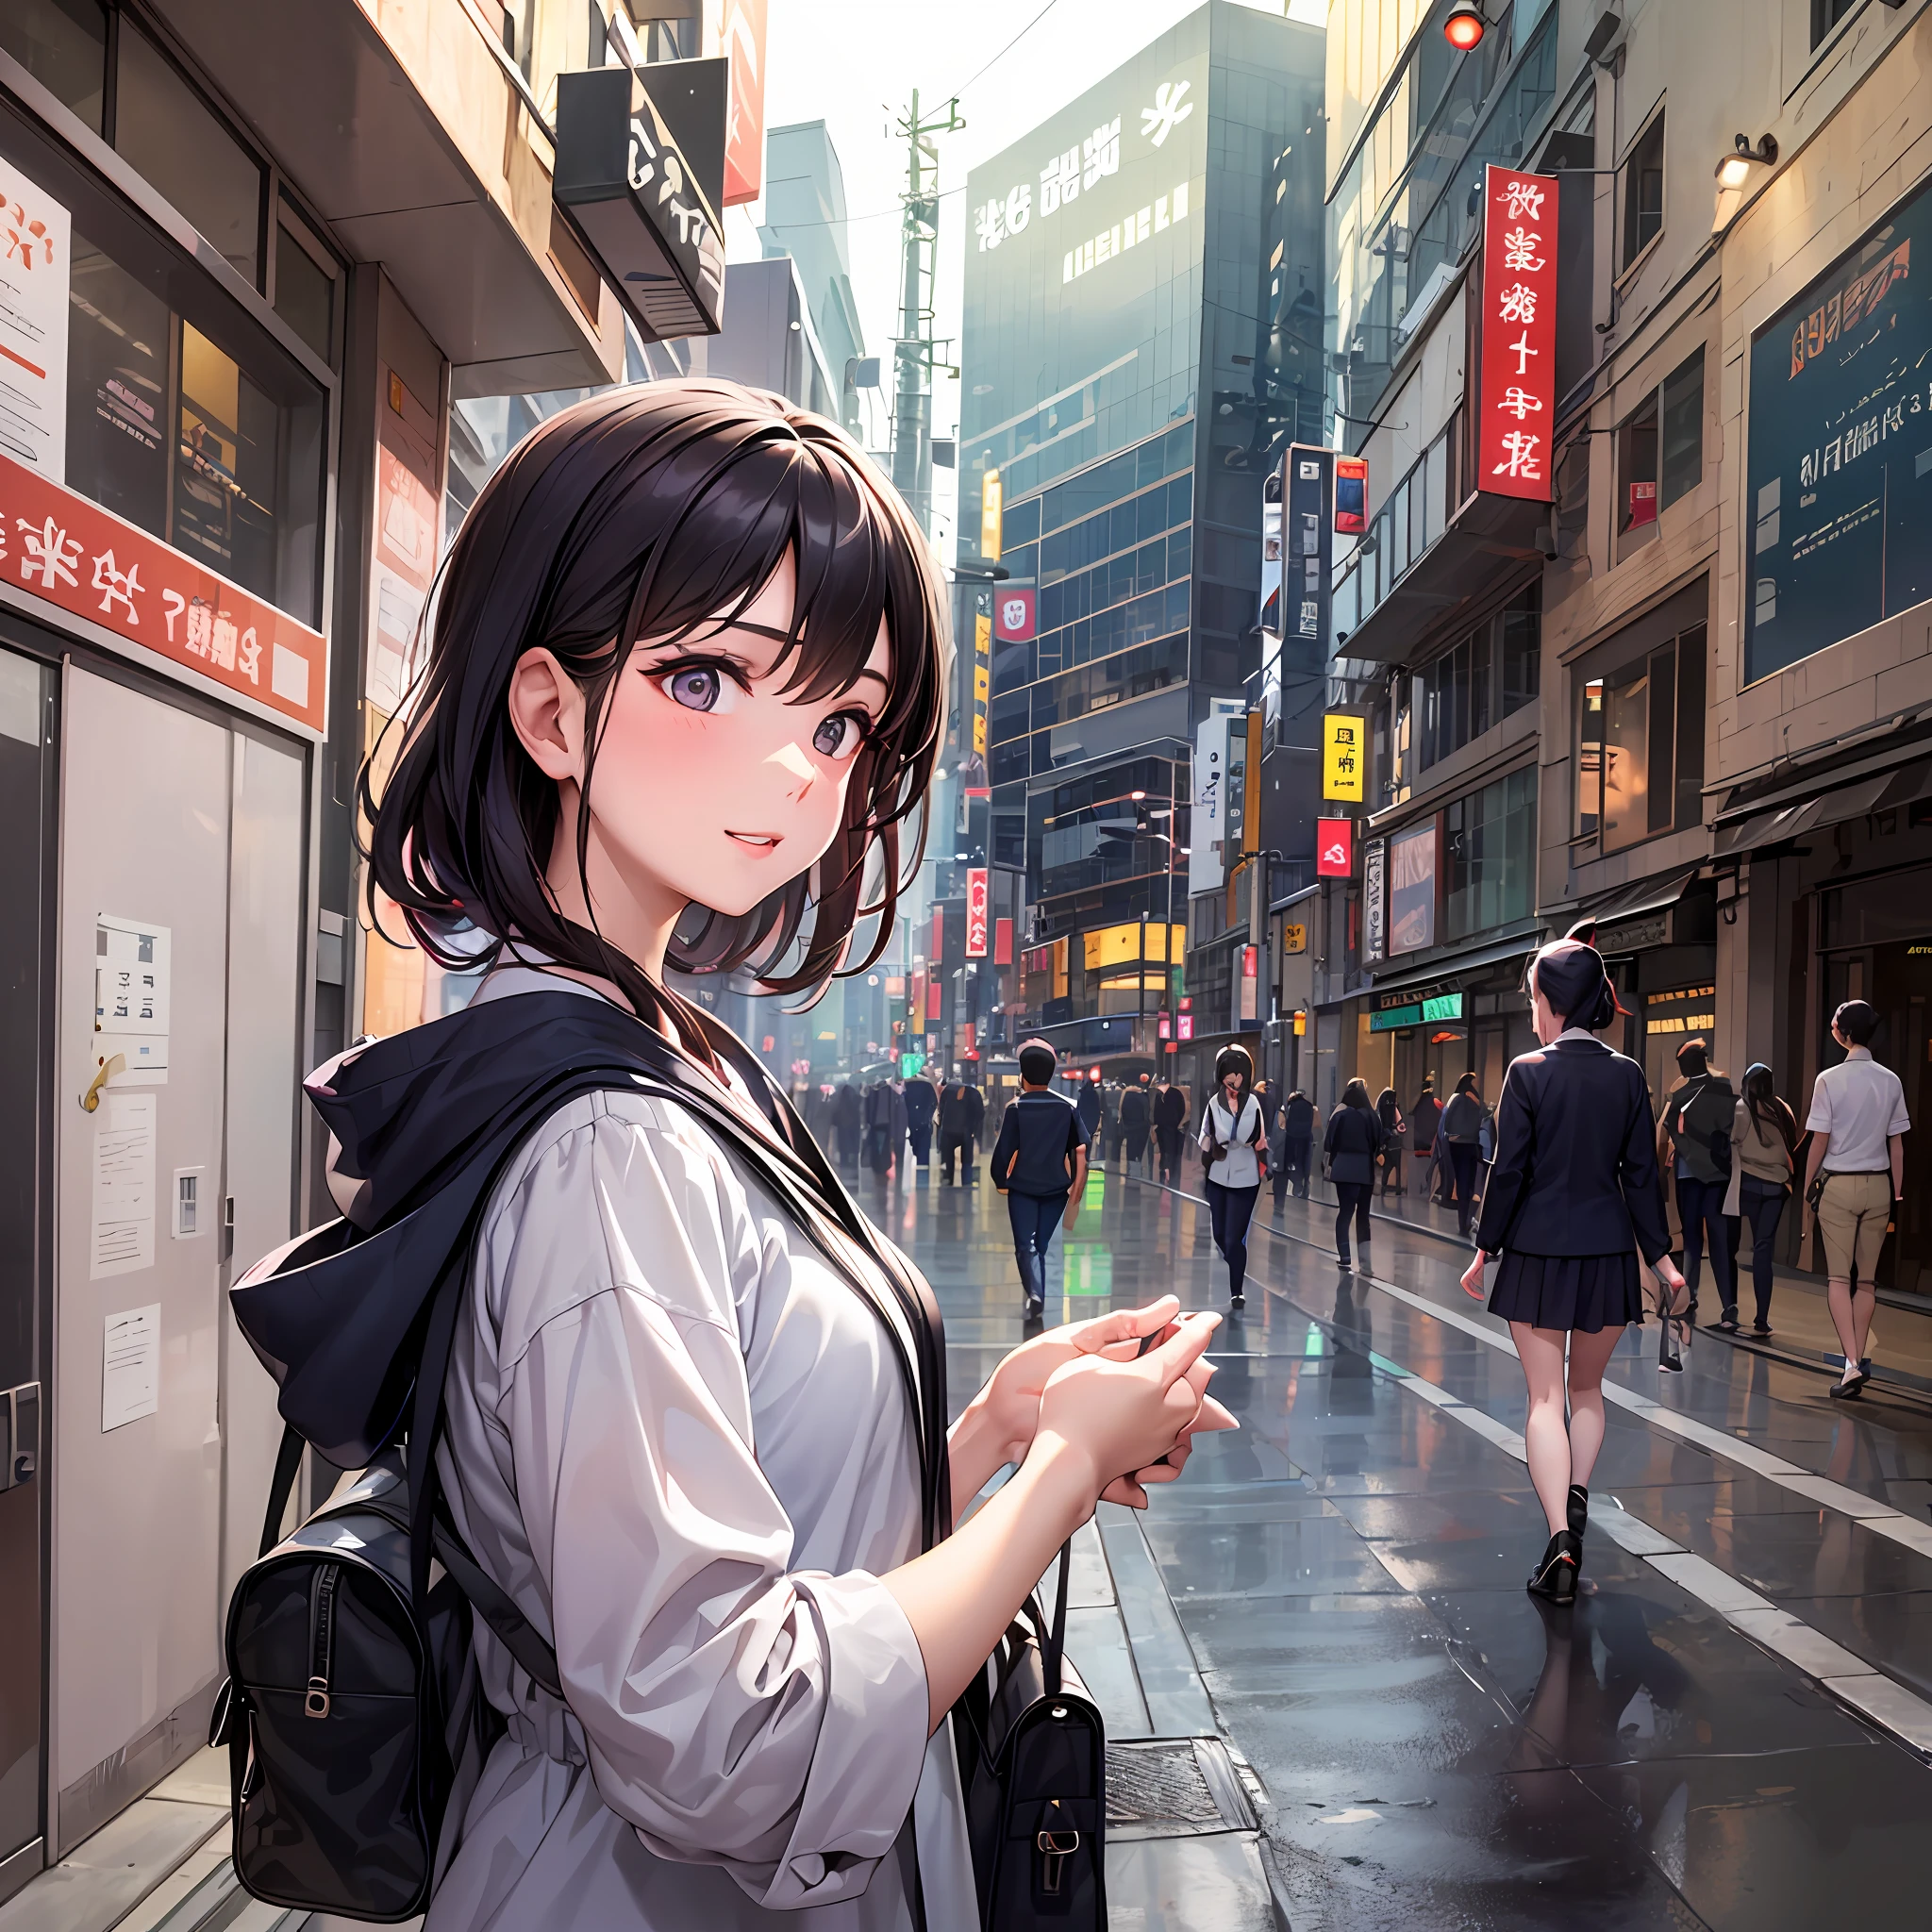 Im Herzen von Tokio, Ein 19-jähriges Mädchen namens Aya begab sich auf eine lebensverändernde Reise – der erste Tag ihres Universitätslebens. Mit klopfendem Herzen vor Aufregung und Nervosität, und ihre Augen füllten sich mit Neugier, Ayas Anziehungskraft spiegelte die Vorfreude und Entschlossenheit wider, die ihre Seele erfüllte.

Als sie durch die geschäftigen Straßen der Stadt navigierte, Tokio schien ein bezauberndes Labyrinth der Möglichkeiten zu sein. Das lebendige Stadtbild, Eine Fusion aus Tradition und Moderne, umgab sie mit einem Gefühl von Energie und Zielstrebigkeit.

Ankunft auf dem Universitätscampus, Aya wurde von einem Meer unbekannter Gesichter begrüßt. Noch, Eine Wärme umfing sie, als sie erkannte, dass alle im selben Boot saßen – ein Neuanfang für ihre akademische Laufbahn.

Betreten des Hörsaals, Aya war ganz aufgeregt. Der große Raum, erfüllt vom Duft neuer Bücher und Wissen, lud sie ein, jede Erfahrung, die sie erwartete, in sich aufzunehmen.. Jeder Schritt, den sie machte, brachte sie der Person näher, die sie werden wollte.

Die Worte des Professors waren wie eine Symphonie der Weisheit, inspiriert Aya, die Welt durch neue Linsen zu sehen. Das Streben nach Wissen entzündete einen Funken in ihr, während sie jedes Wort begierig aufnahm, Ihre Neugier wächst mit jedem Augenblick.

Während der Pausen, Aya war von freundlichen Gesichtern umgeben. Die Gespräche flossen wie ein sanfter Bach, als sie sich mit Klassenkameraden traf, die ihre Leidenschaften und Träume teilten. Das Gefühl der Kameradschaft linderte ihre anfängliche Nervosität, Förderung einer Atmosphäre der Unterstützung und Zugehörigkeit.

Außerhalb des Unterrichts, Aya erkundete den riesigen Campus, Sie entdeckte versteckte Orte und ruhige Gärten, in denen sie inmitten der Lebendigkeit der Stadt Trost finden konnte. Der Campus wurde ihr Zufluchtsort, ein Ort, an dem sie nachdenken konnte, aufladen, und umarme ihre Träume.

In den Abendstunden, als sie in ihr Wohnheim zurückkehrte, Sie knüpfte Kontakte zu Mitbewohnern mit unterschiedlichem Hintergrund, Lernen Sie ihre Kulturen kennen und teilen Sie Geschichten aus ihren Heimatstädten.